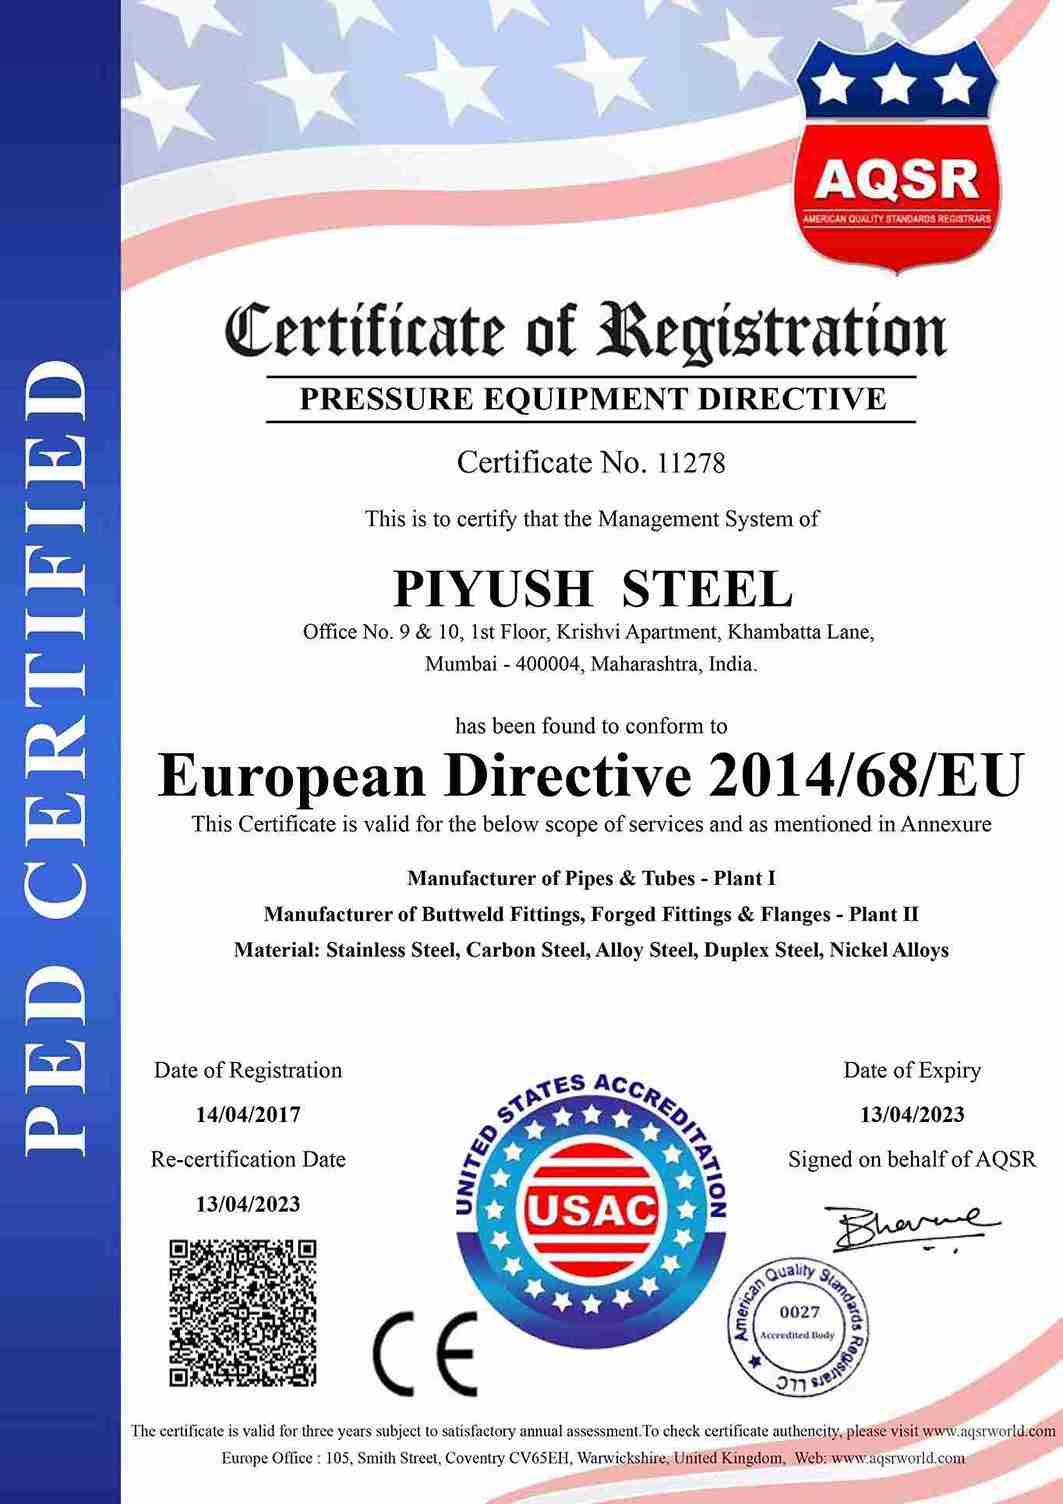 European Directive 2014 / 68 / EU